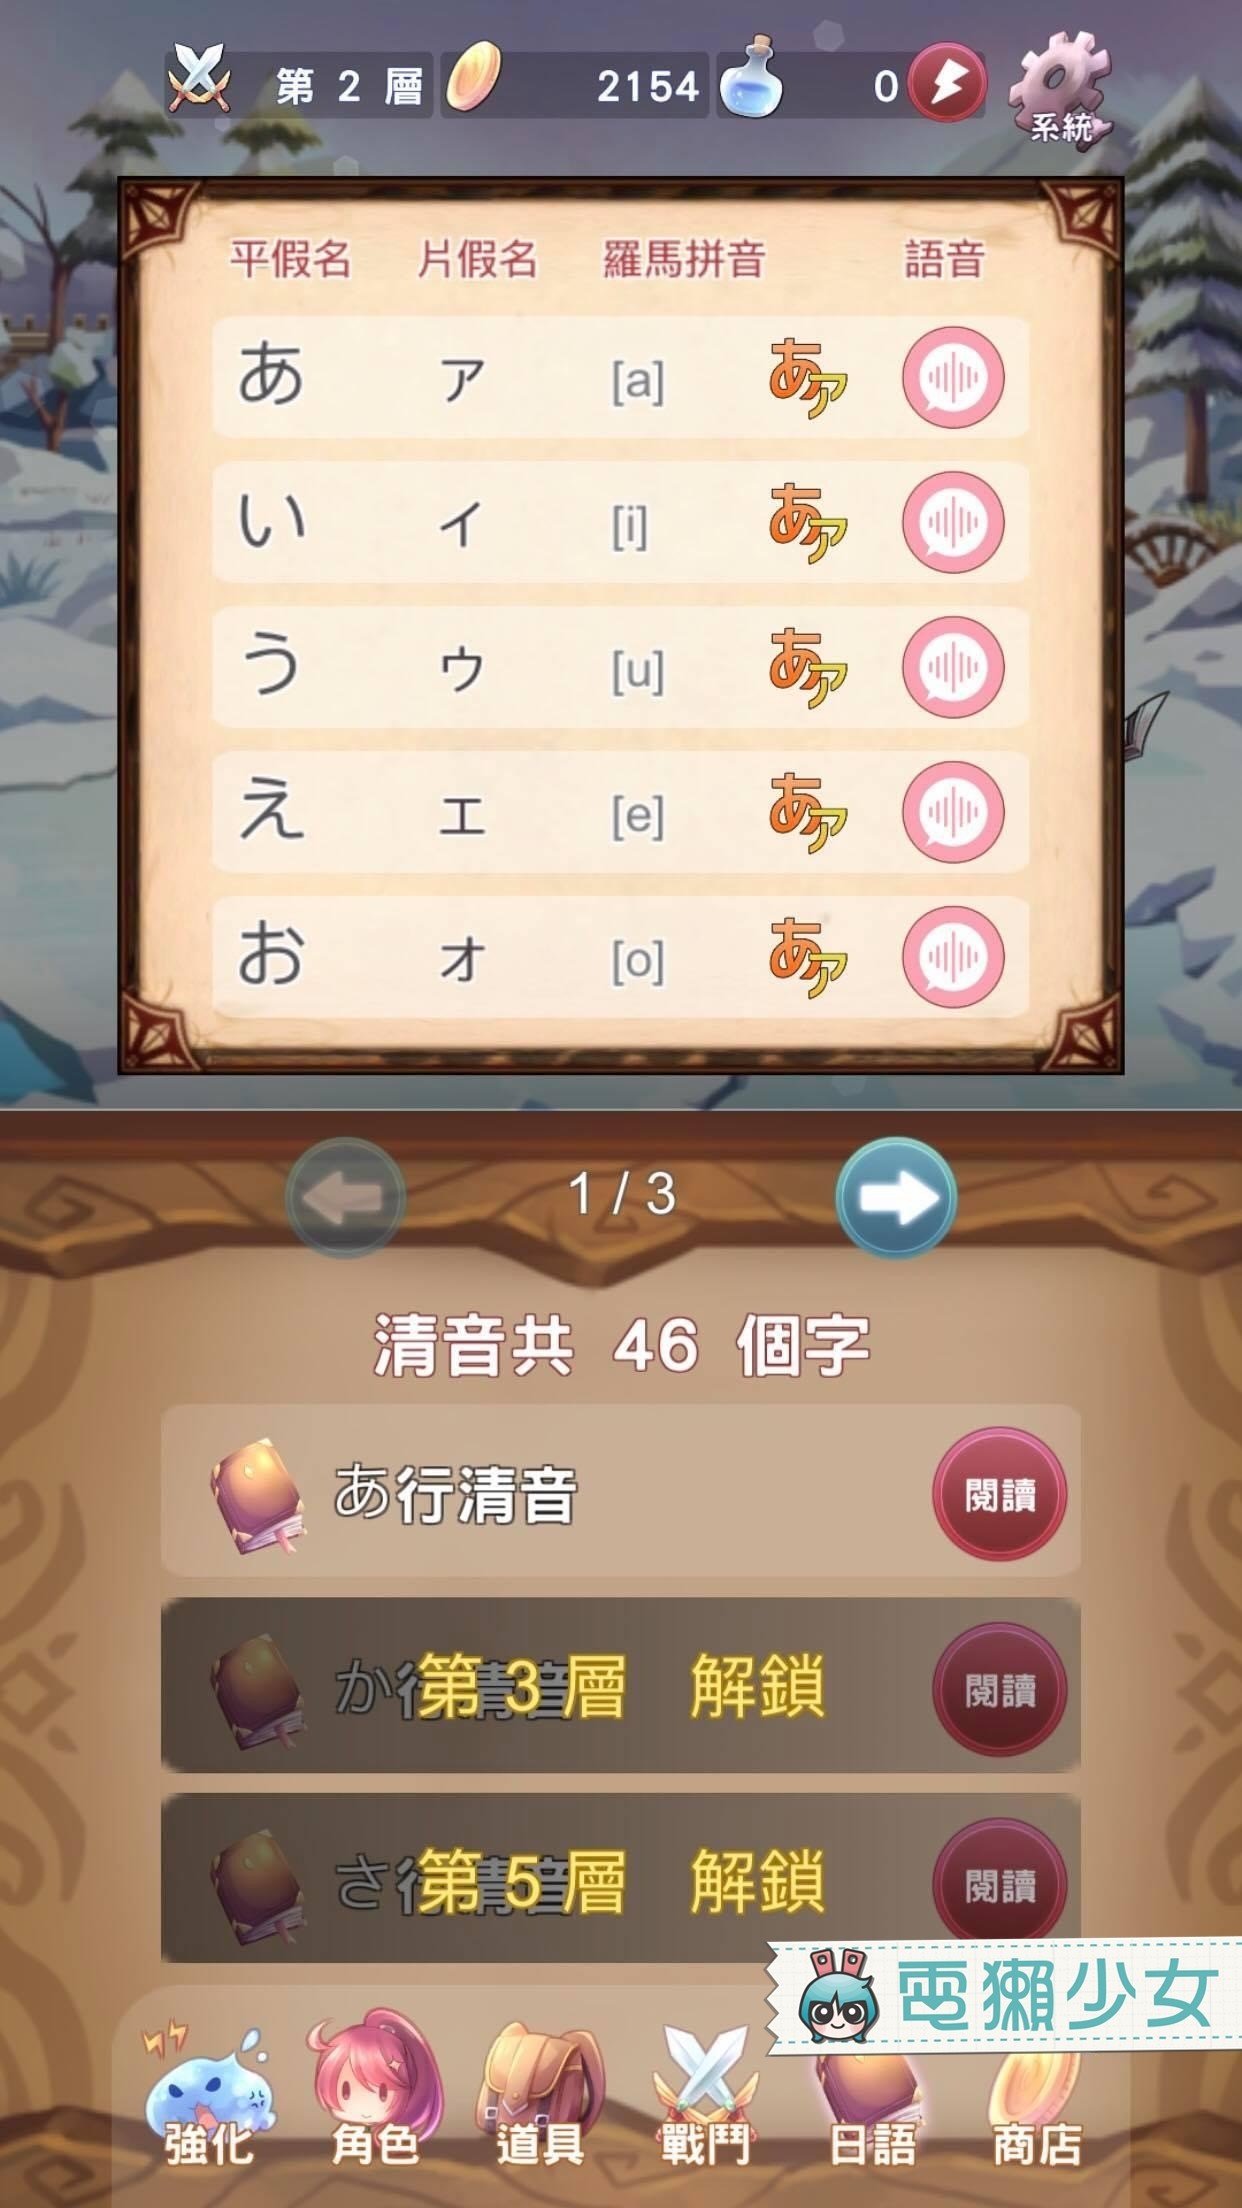 玩遊戲學日文『 日語50音-初心の冒險 』不小心就通通記起來了！Android / iOS